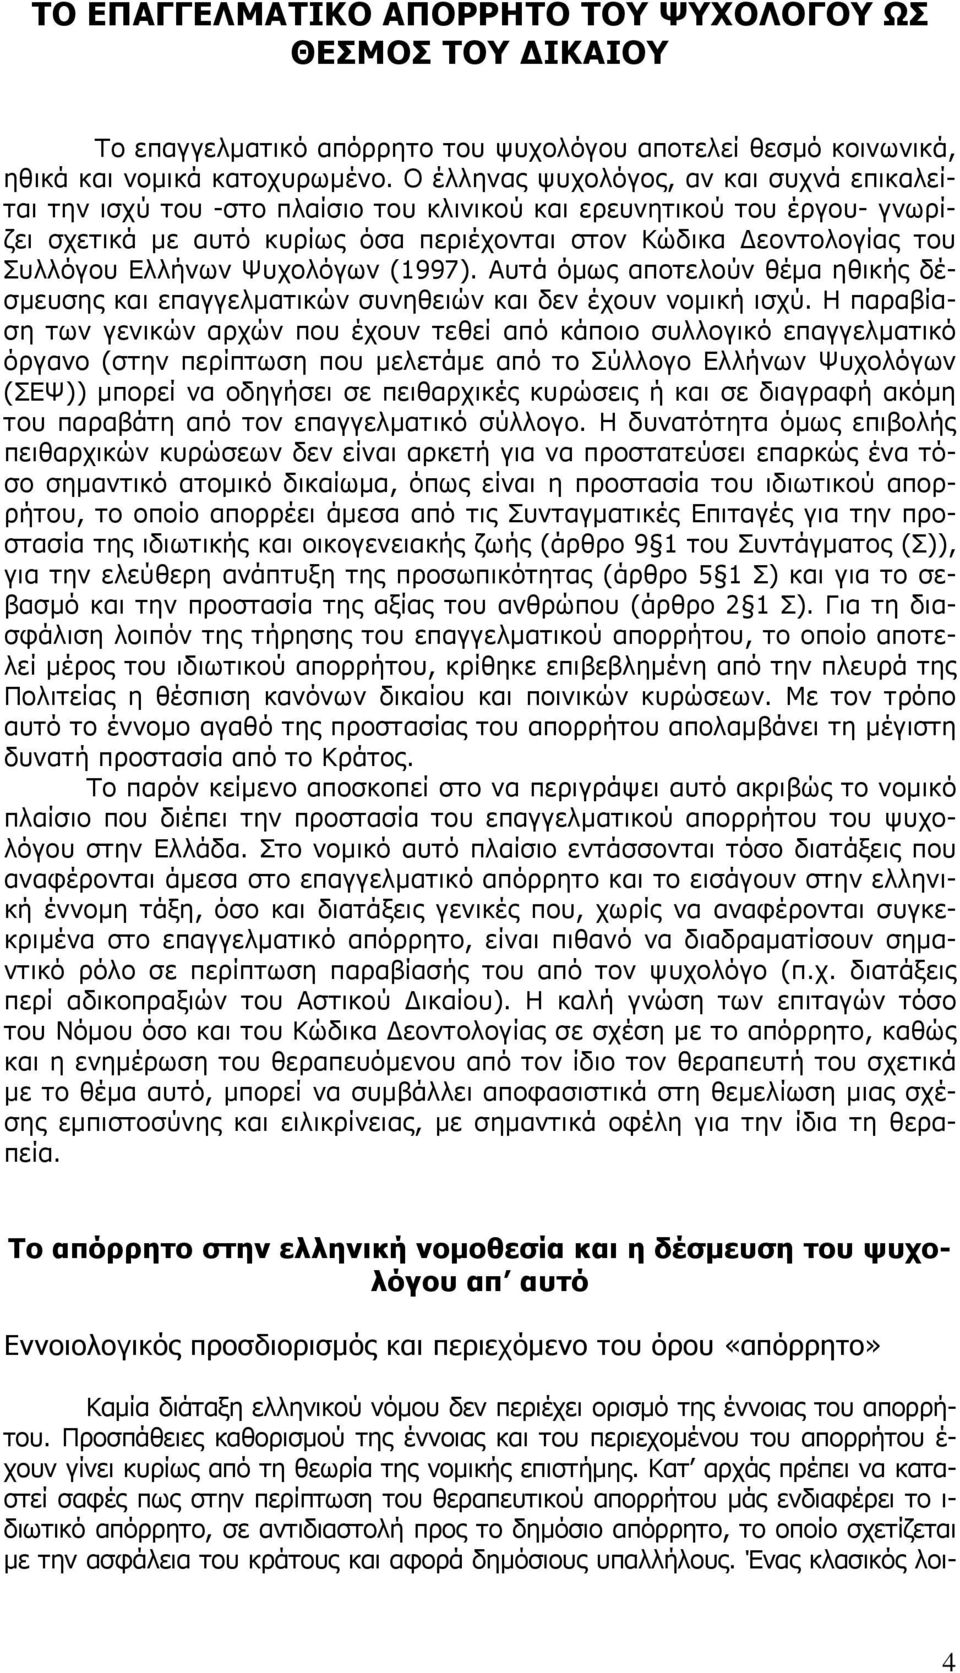 Ελλήνων Ψυχολόγων (1997). Αυτά όμως αποτελούν θέμα ηθικής δέσμευσης και επαγγελματικών συνηθειών και δεν έχουν νομική ισχύ.